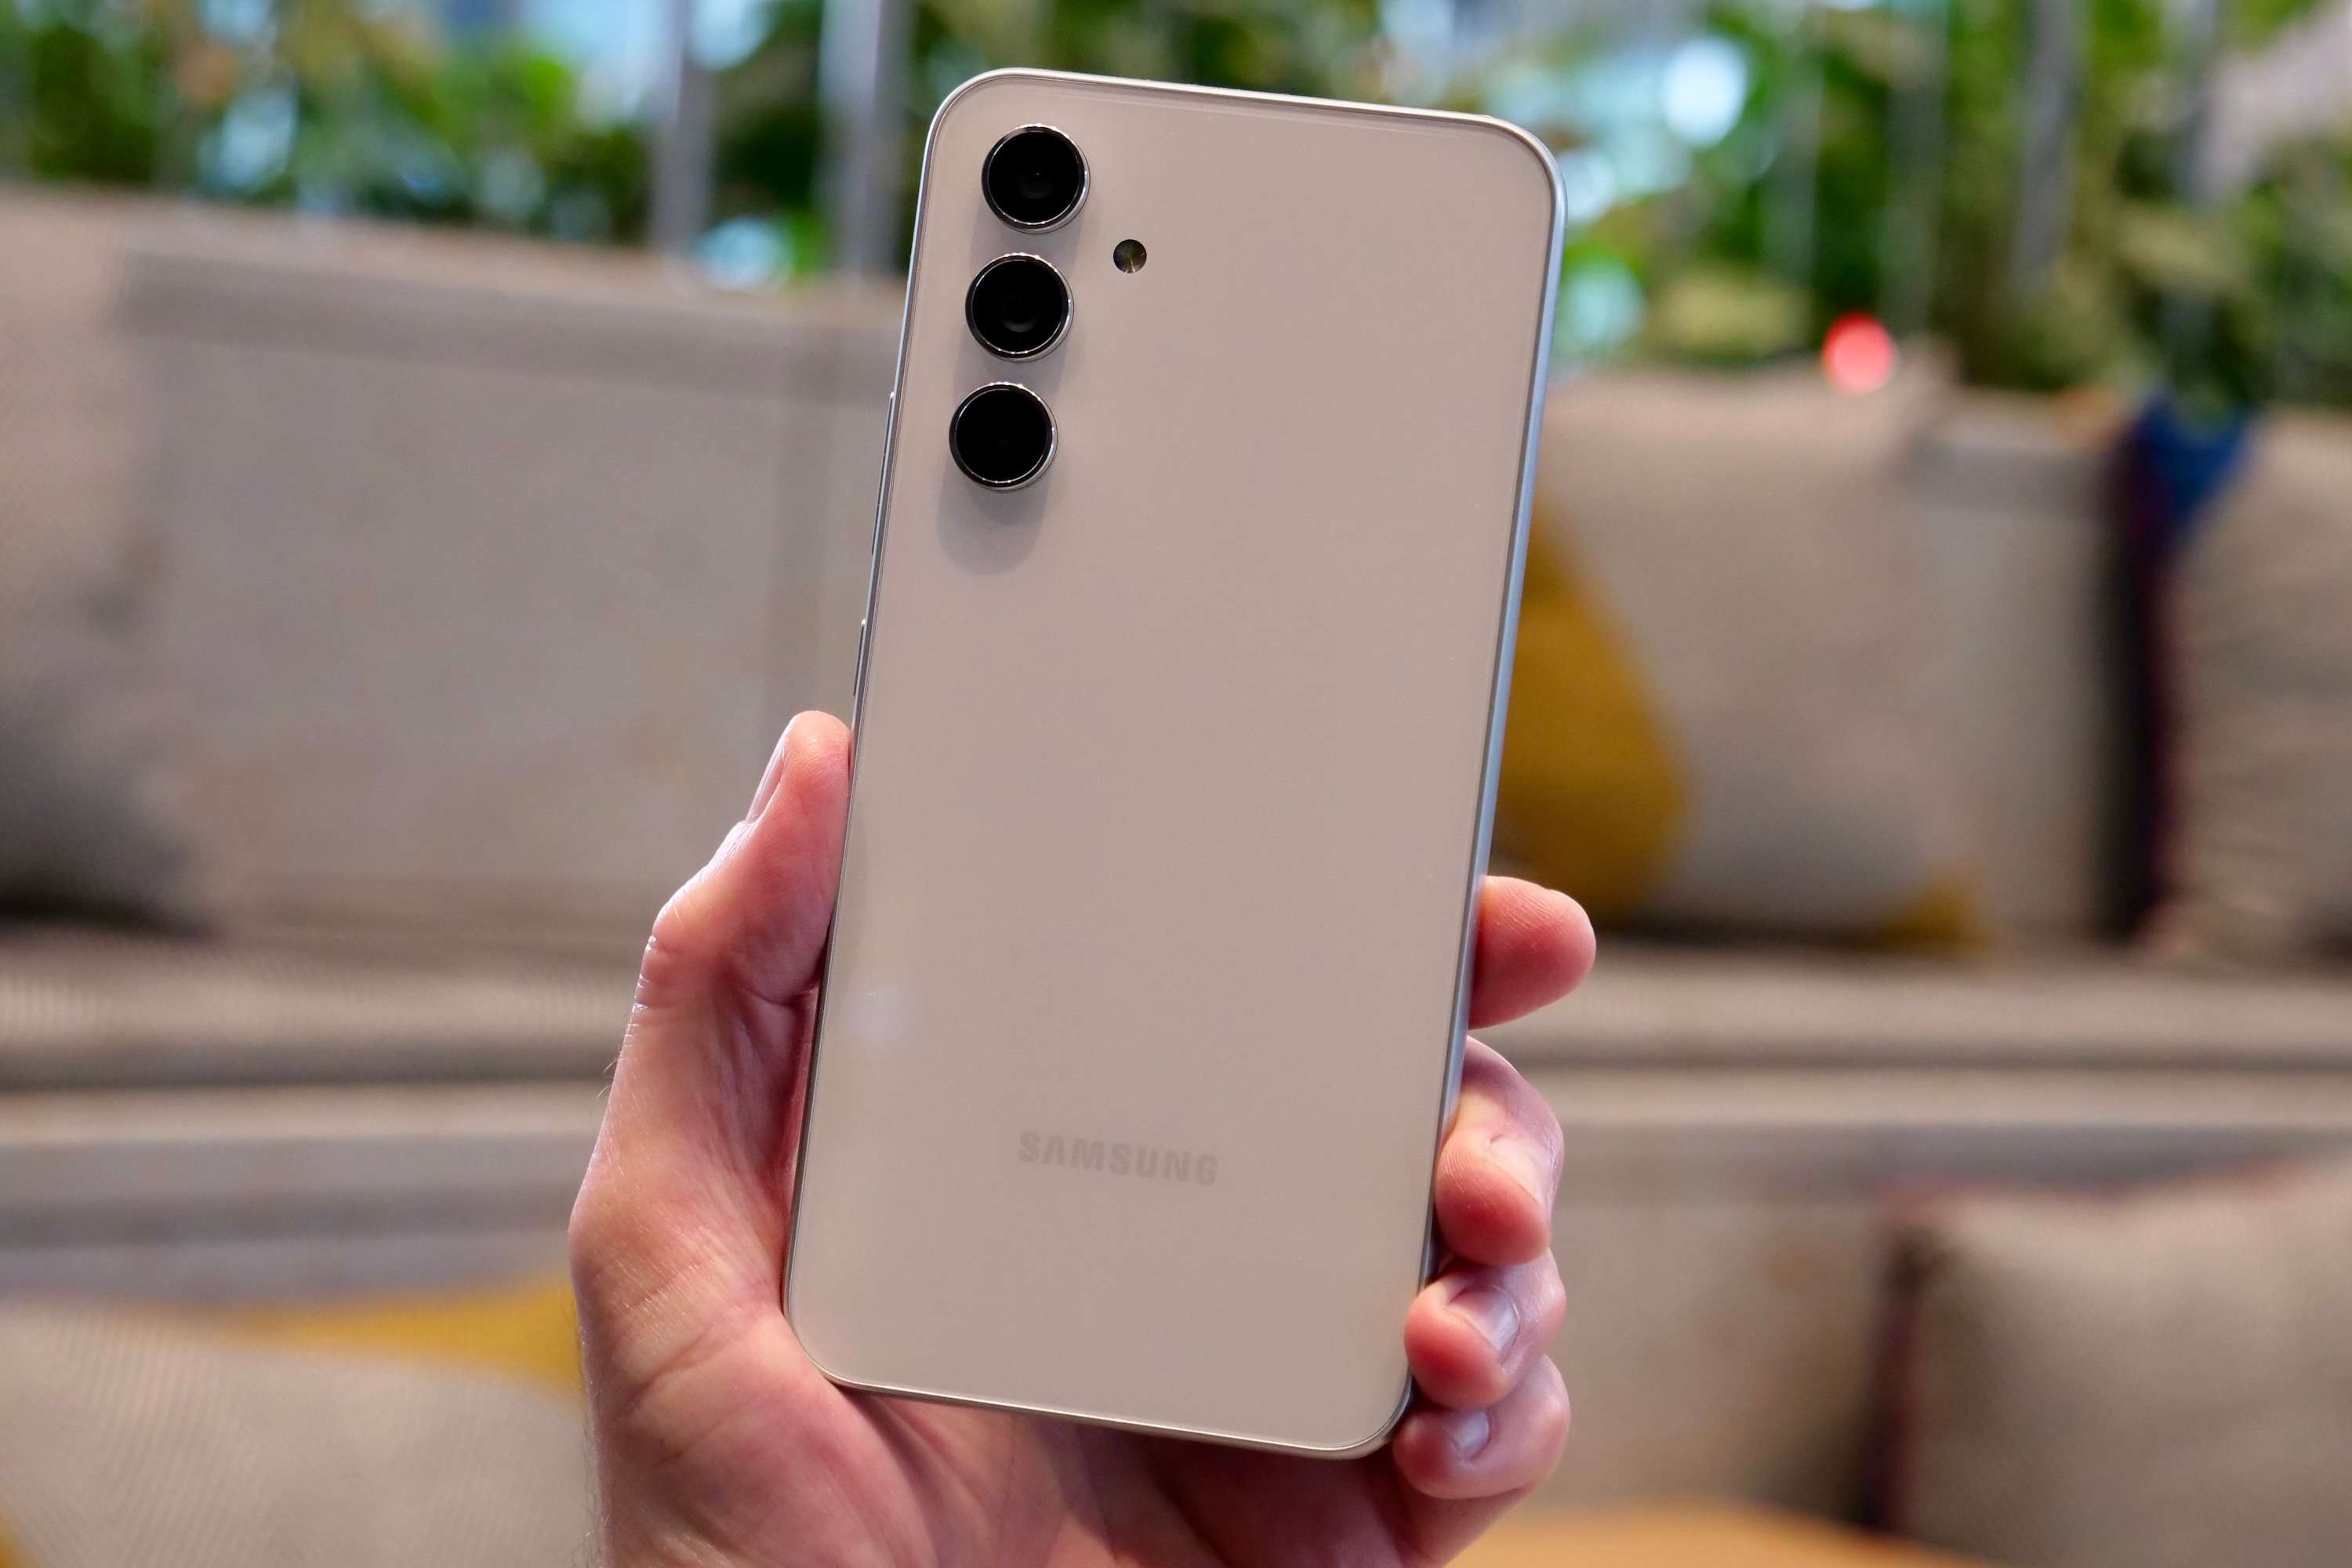  Samsung Galaxy A Series के शानदार स्मार्टफोन मिल रहे हैं बहुत सस्ते, जानिए इनके बारे में